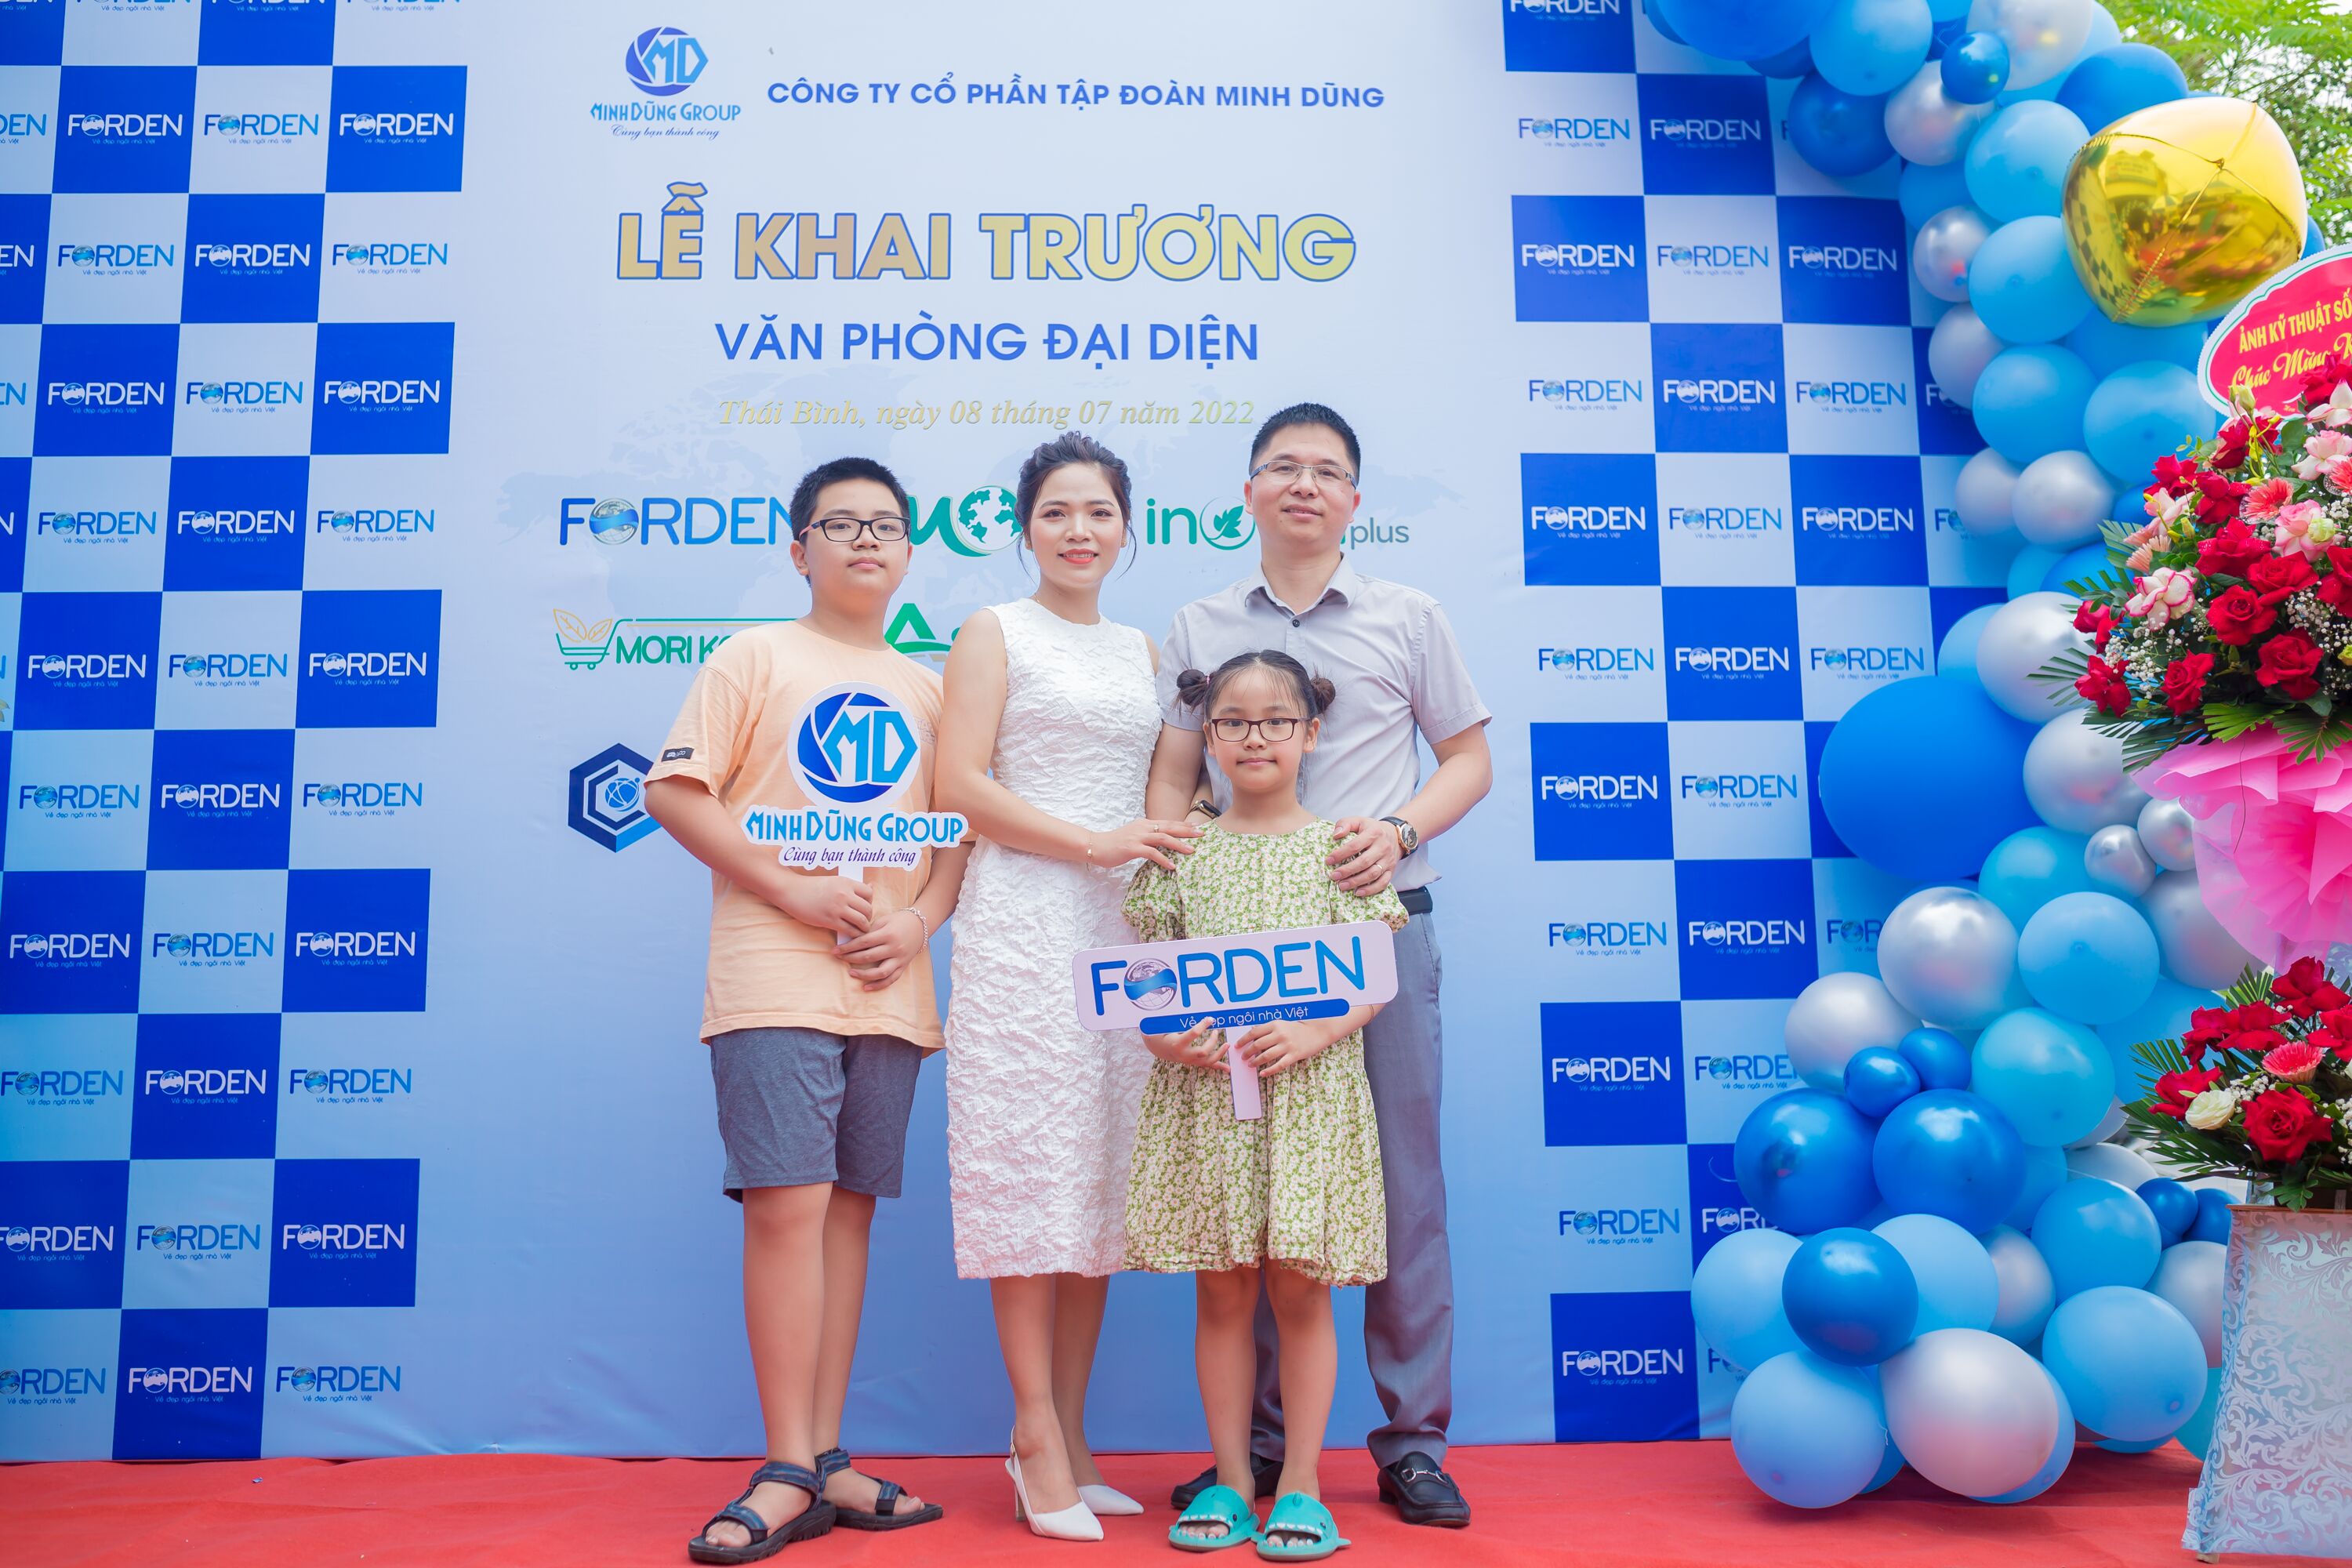 Doanh nhân Nguyễn Văn Thuy: Thành công đến từ đam mê và sự nỗ lực không ngừng